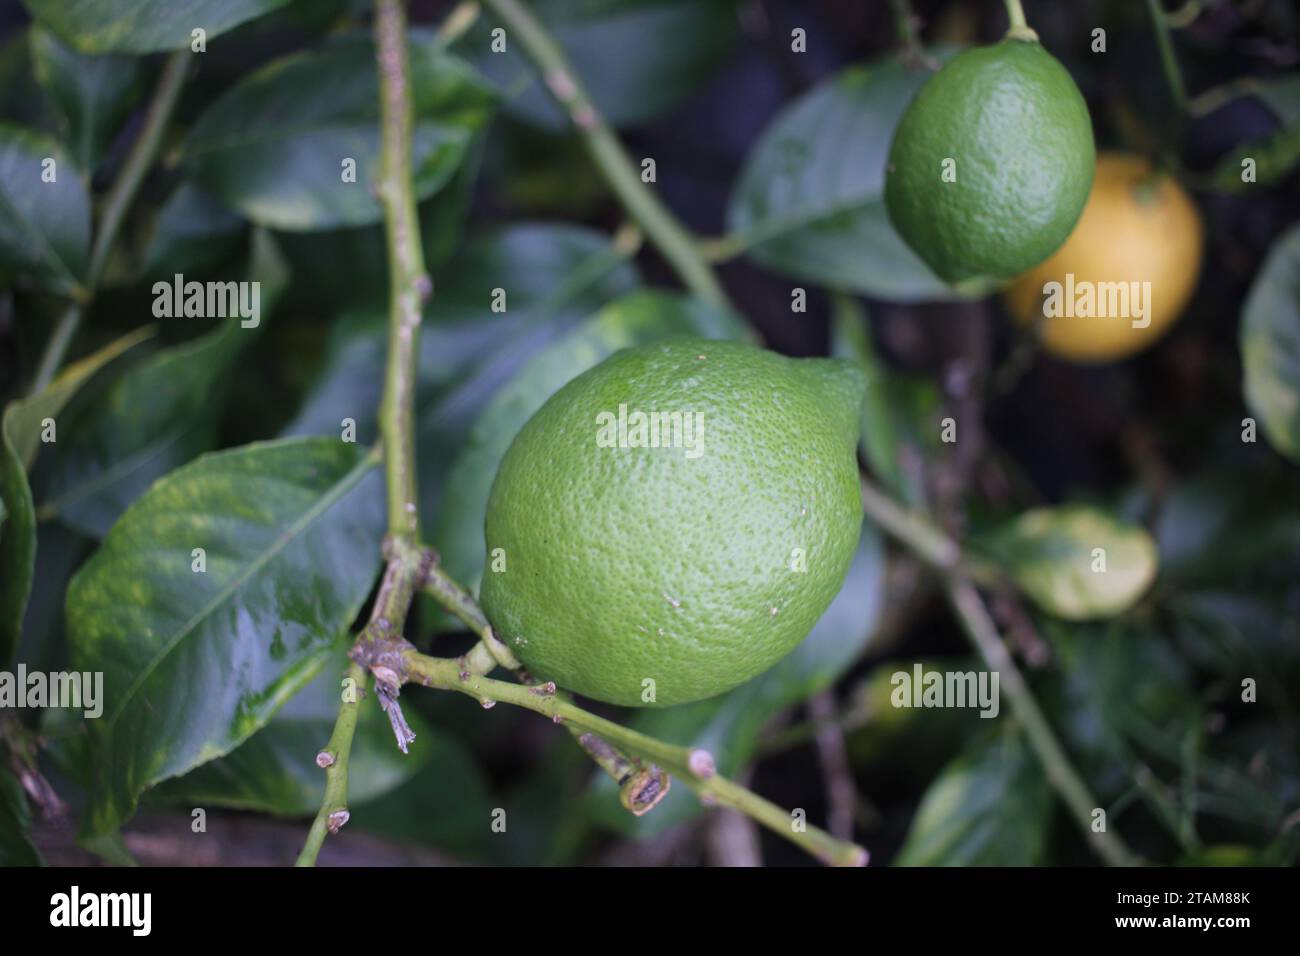 limoni organici verdi e gialli in un limone Foto Stock